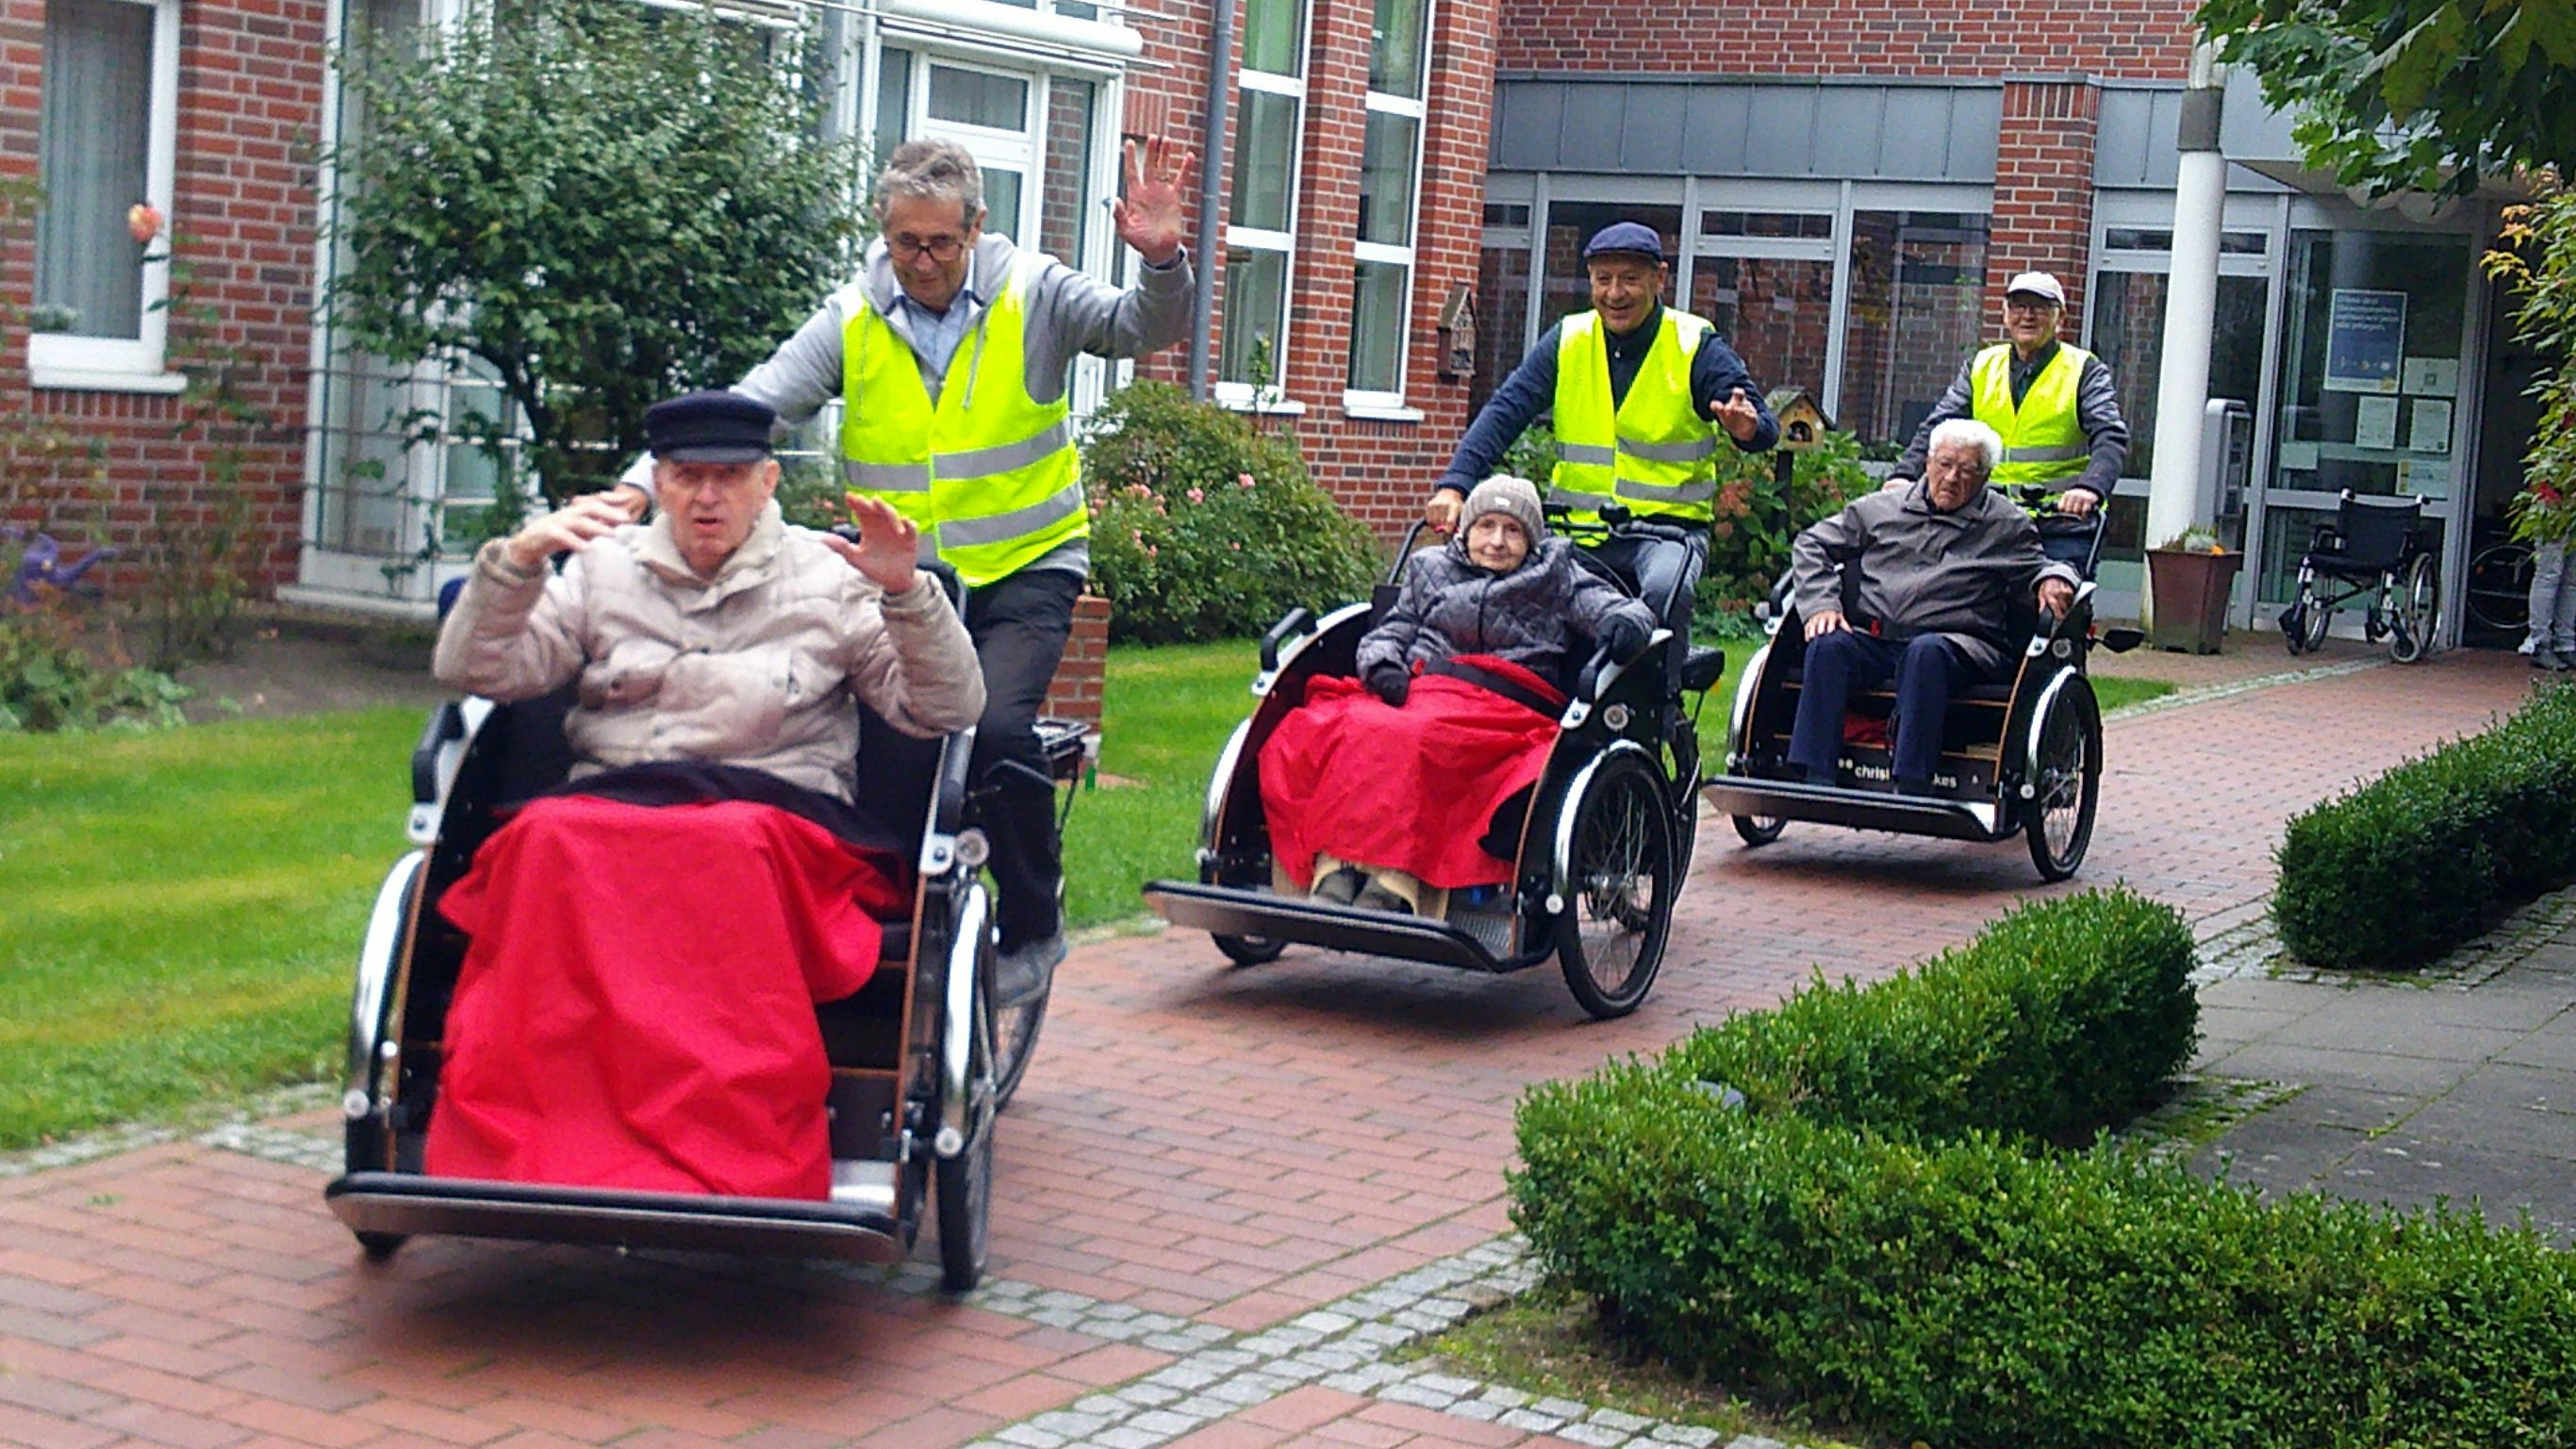 Auf geht's: Gut gelaunt machten sich die 3 Rikschafahrer mit ihren Fahrgästen auf den Weg.&nbsp; &nbsp; Foto: Osterloh